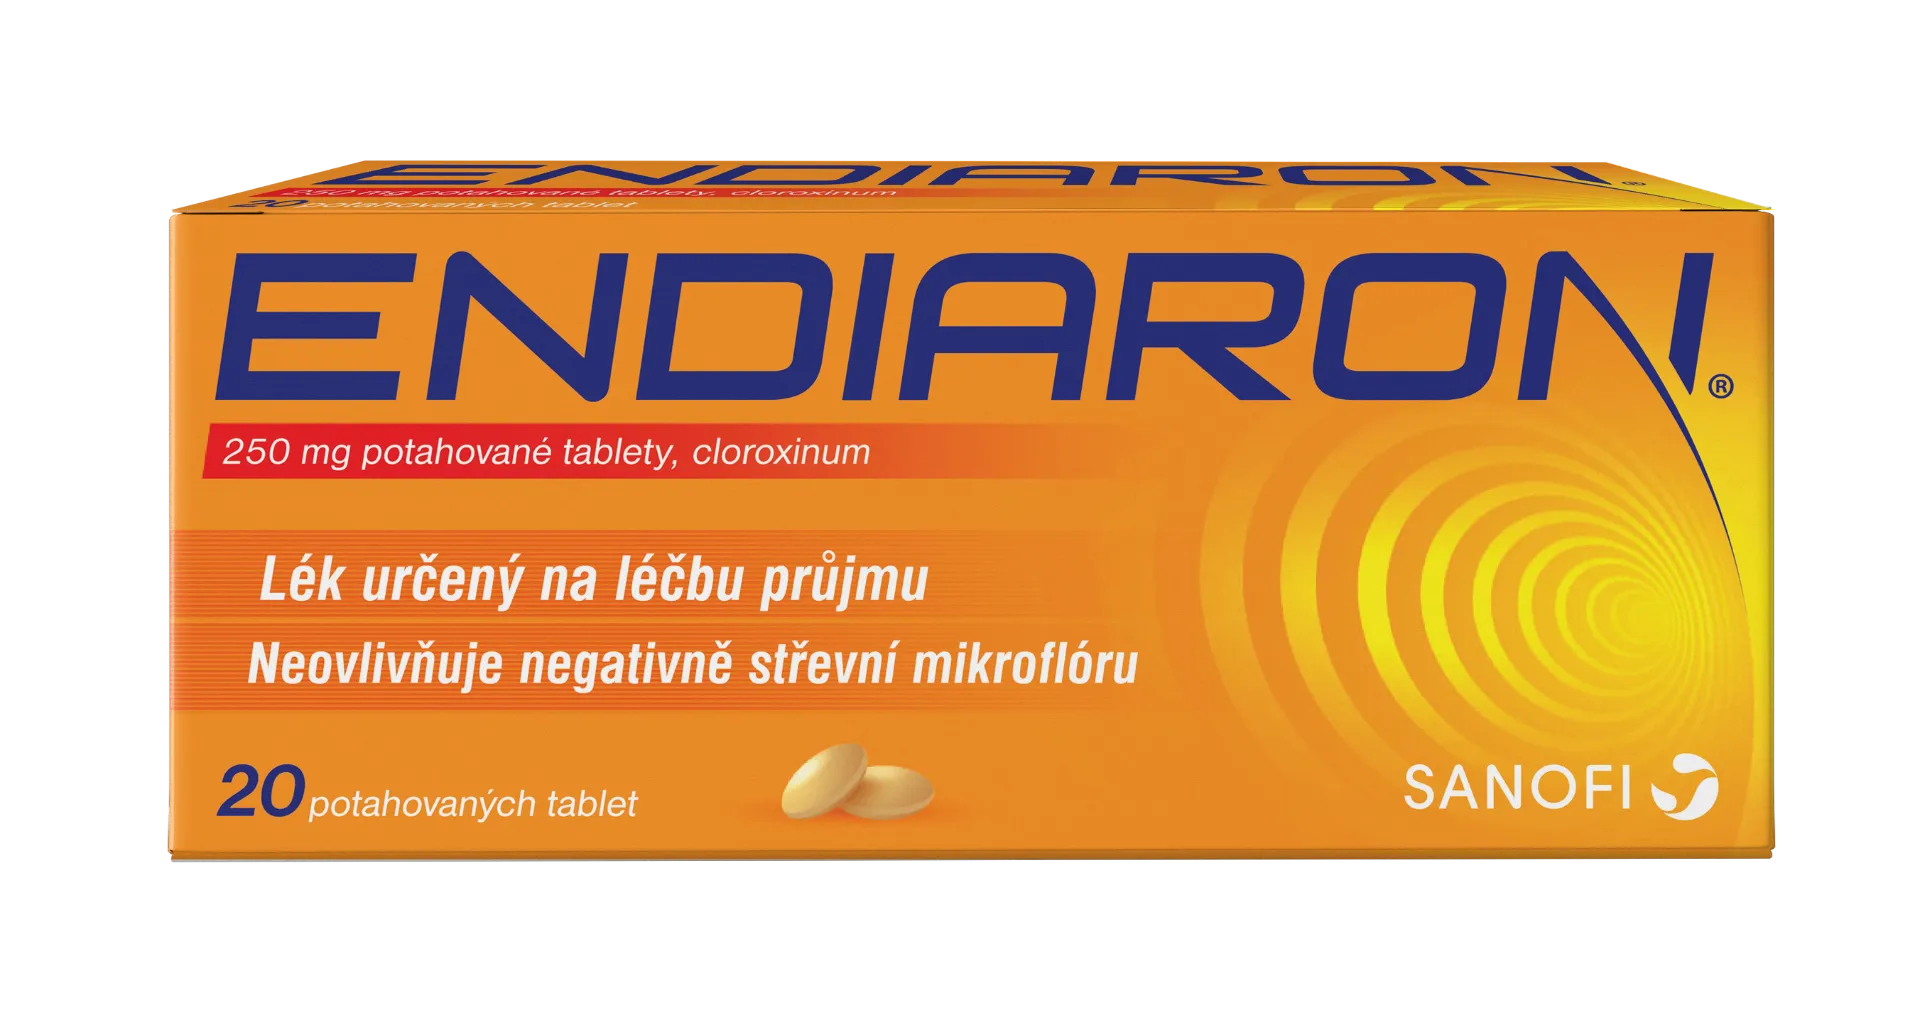 Endiaron 250 mg